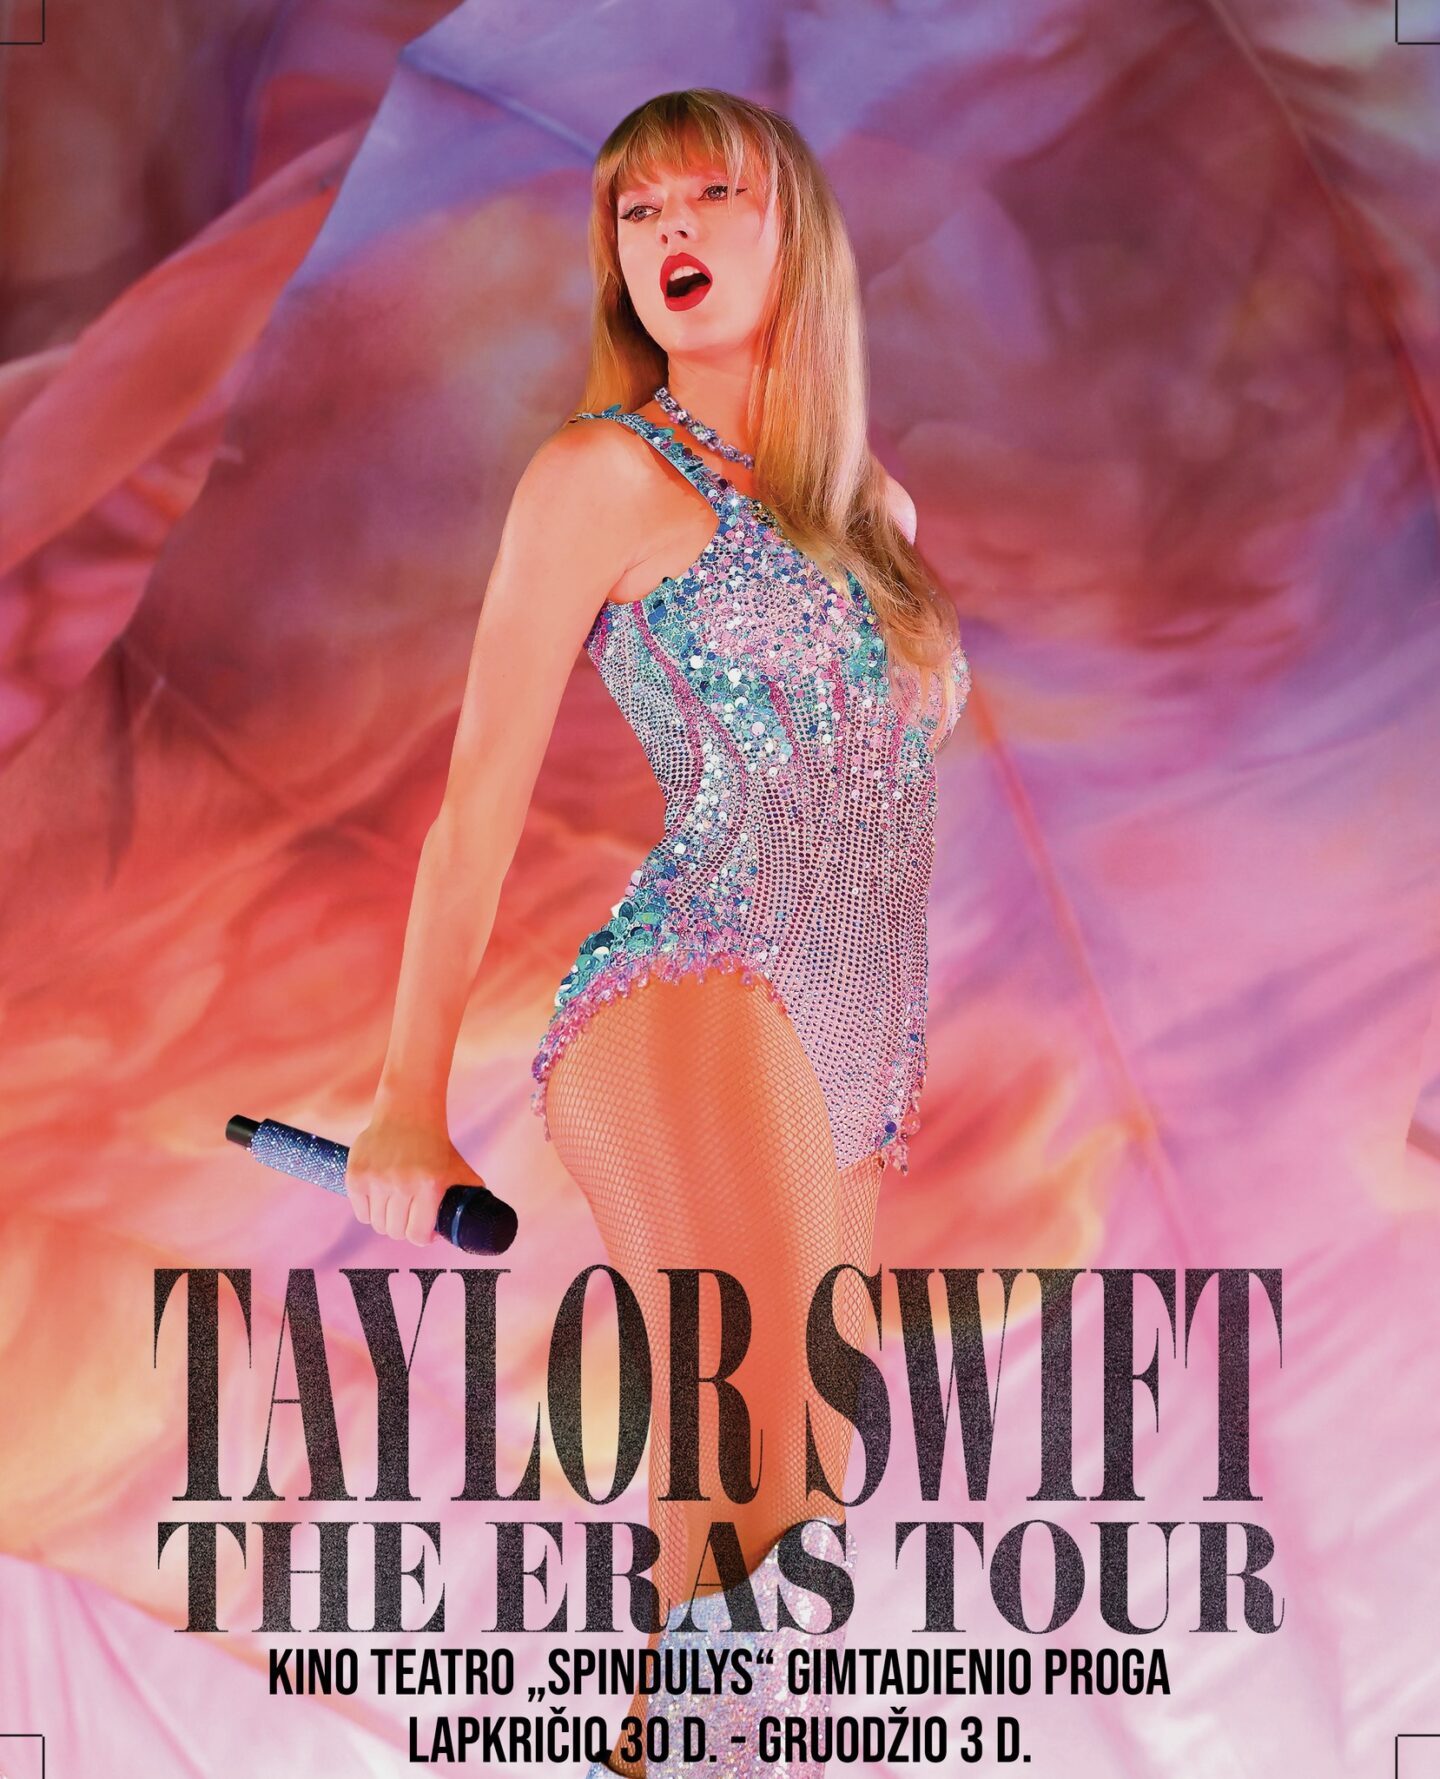 Gimtadienio proga -Taylor Swift filmas-koncertas